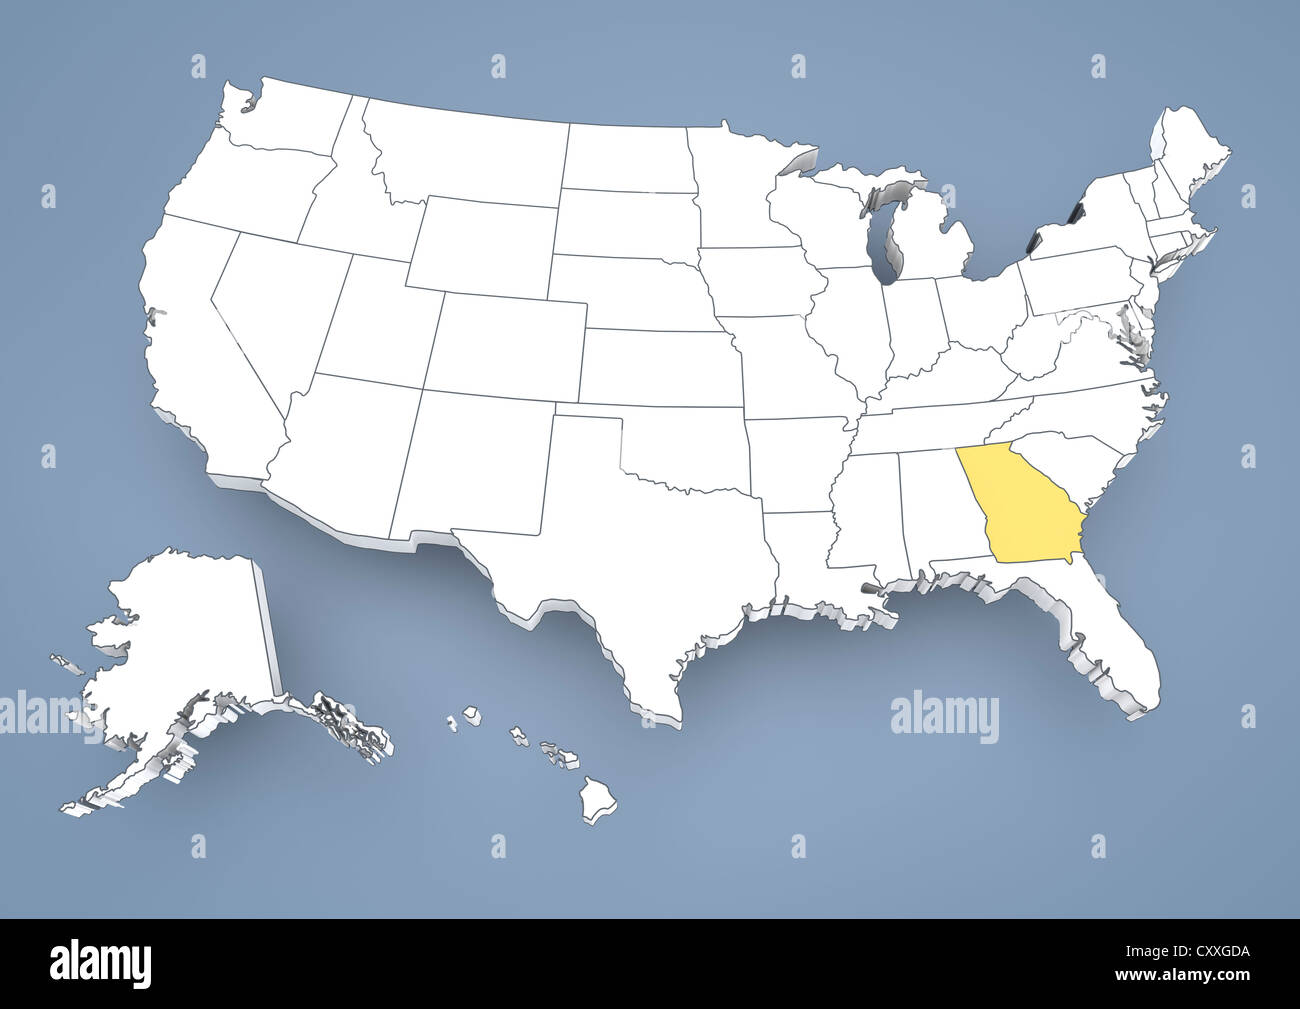 La Géorgie, GA, mis en évidence sur une carte en courbes de USA, United States of America, 3D illustration Banque D'Images